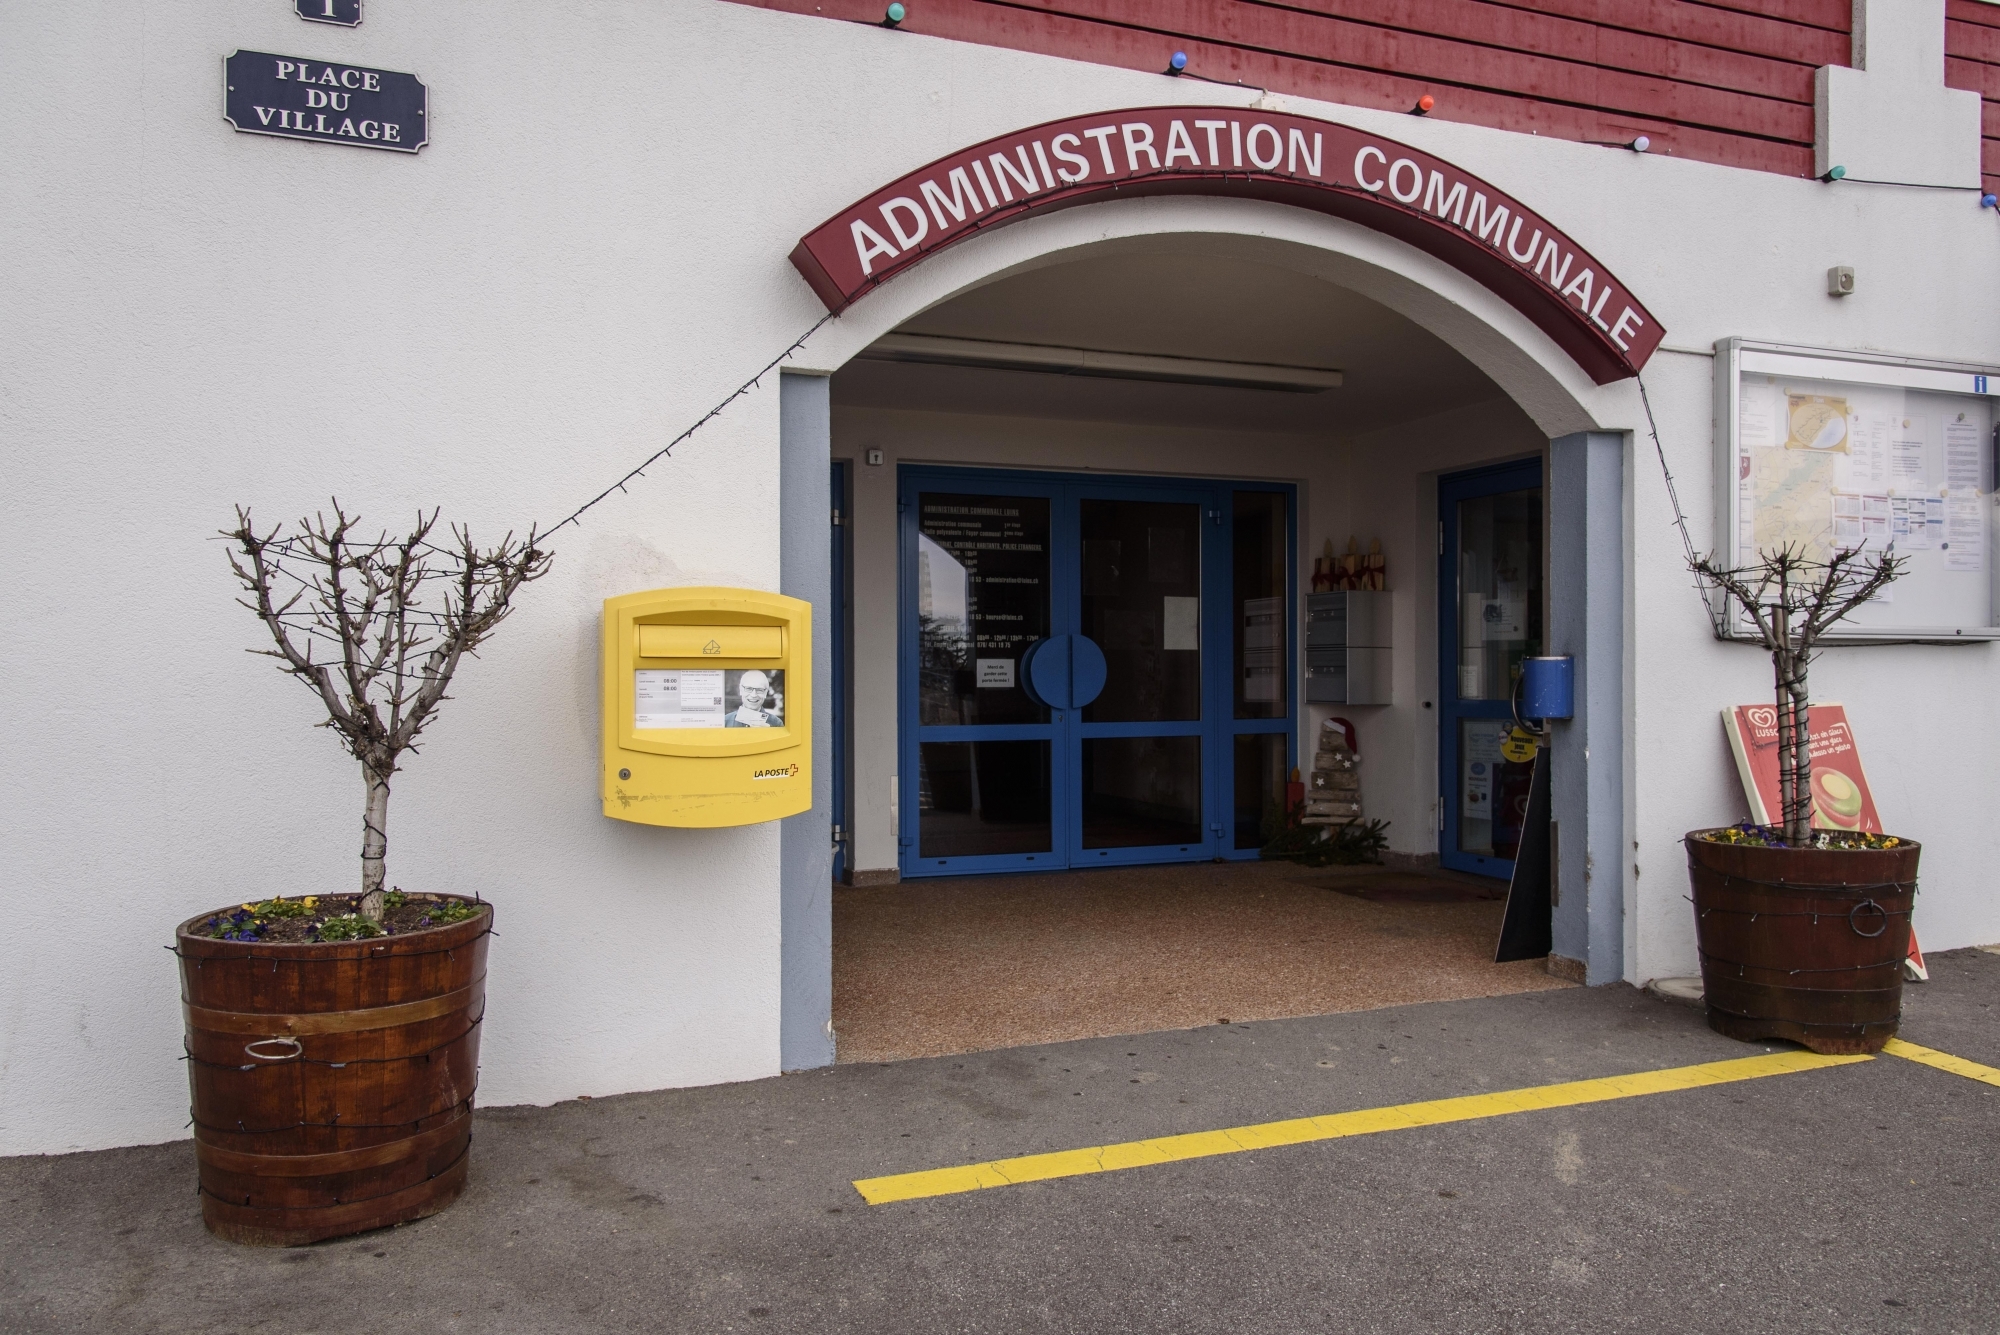 La commune de Luins, ici l'administration, compte déjà une liste d'entente pour les élections communales de l'an prochain.